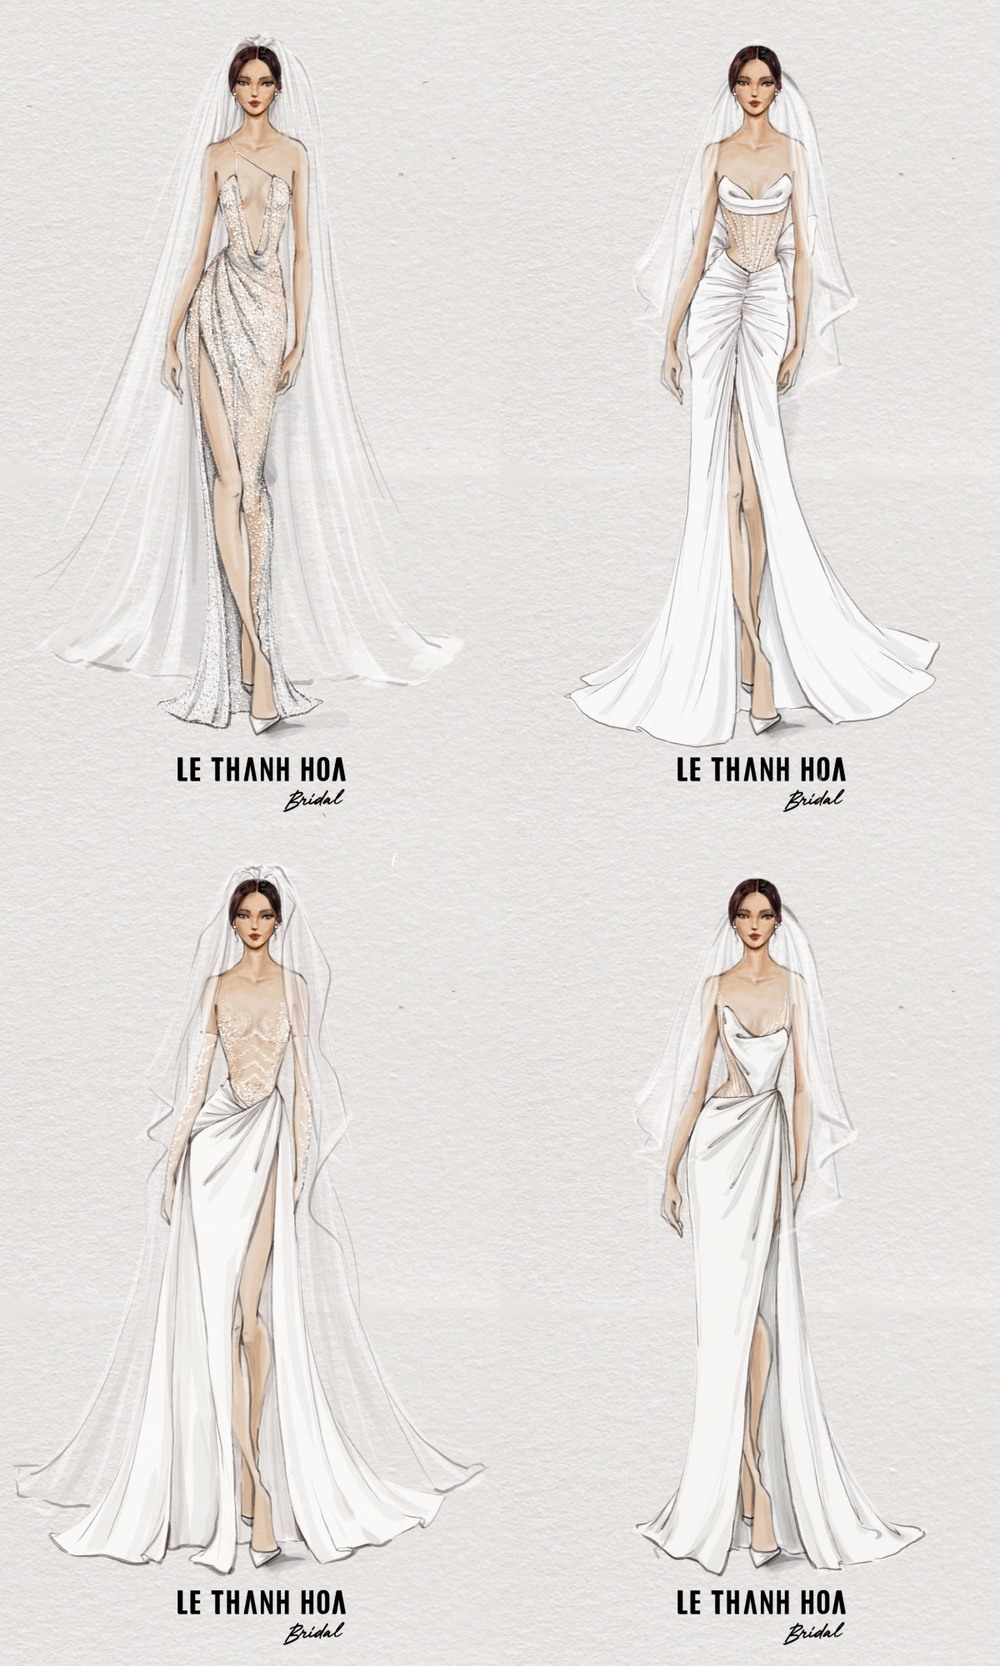 Hãy cùng chiêm ngưỡng những thiết kế váy cưới đẹp như mơ tại cuộc thi Miss Universe Vietnam